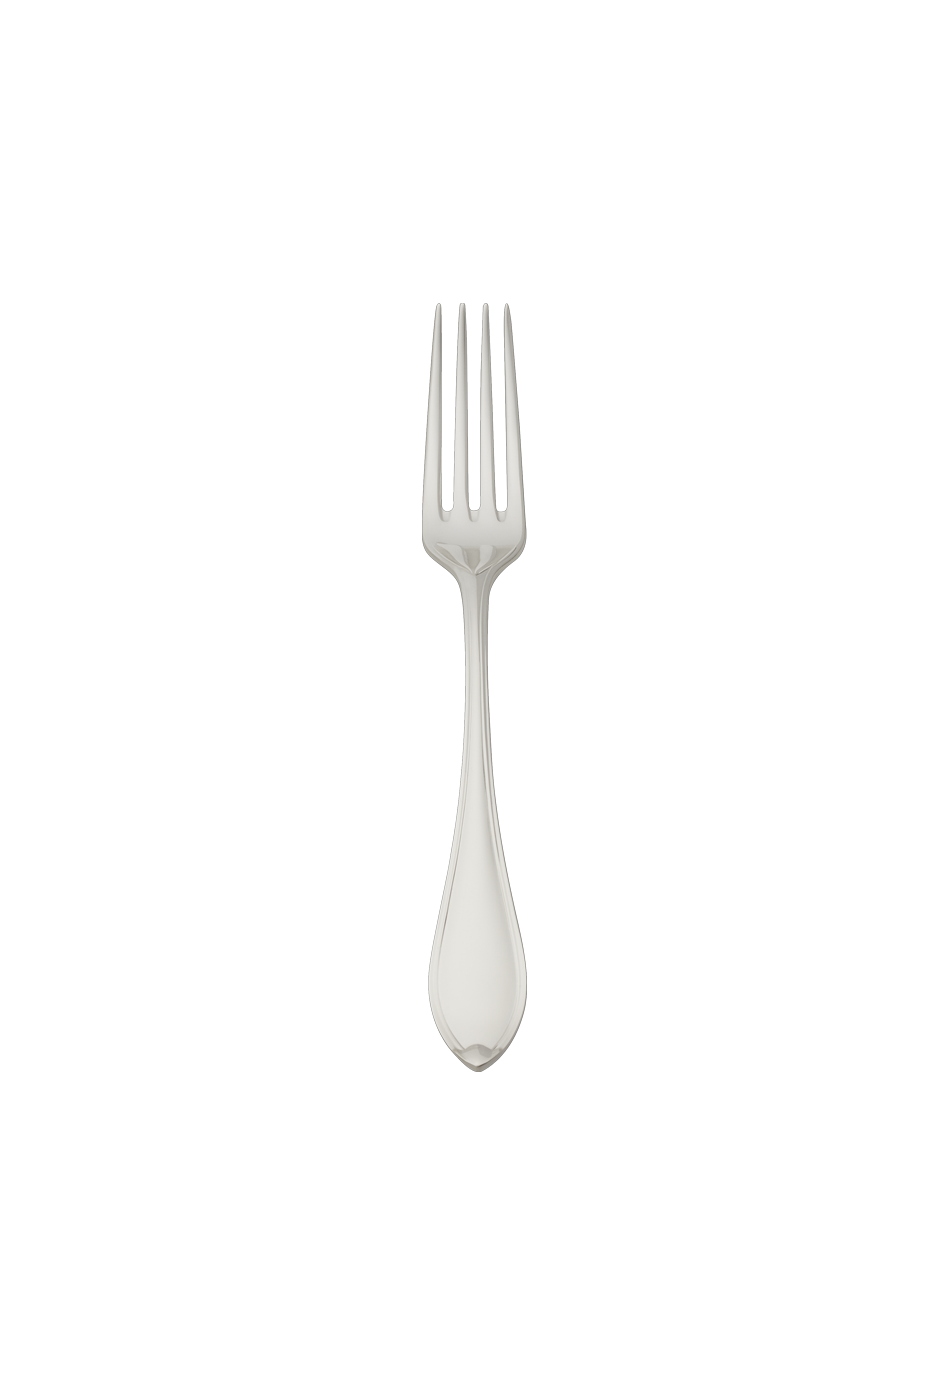 Navette Children's Fork (150g massive silverplated)